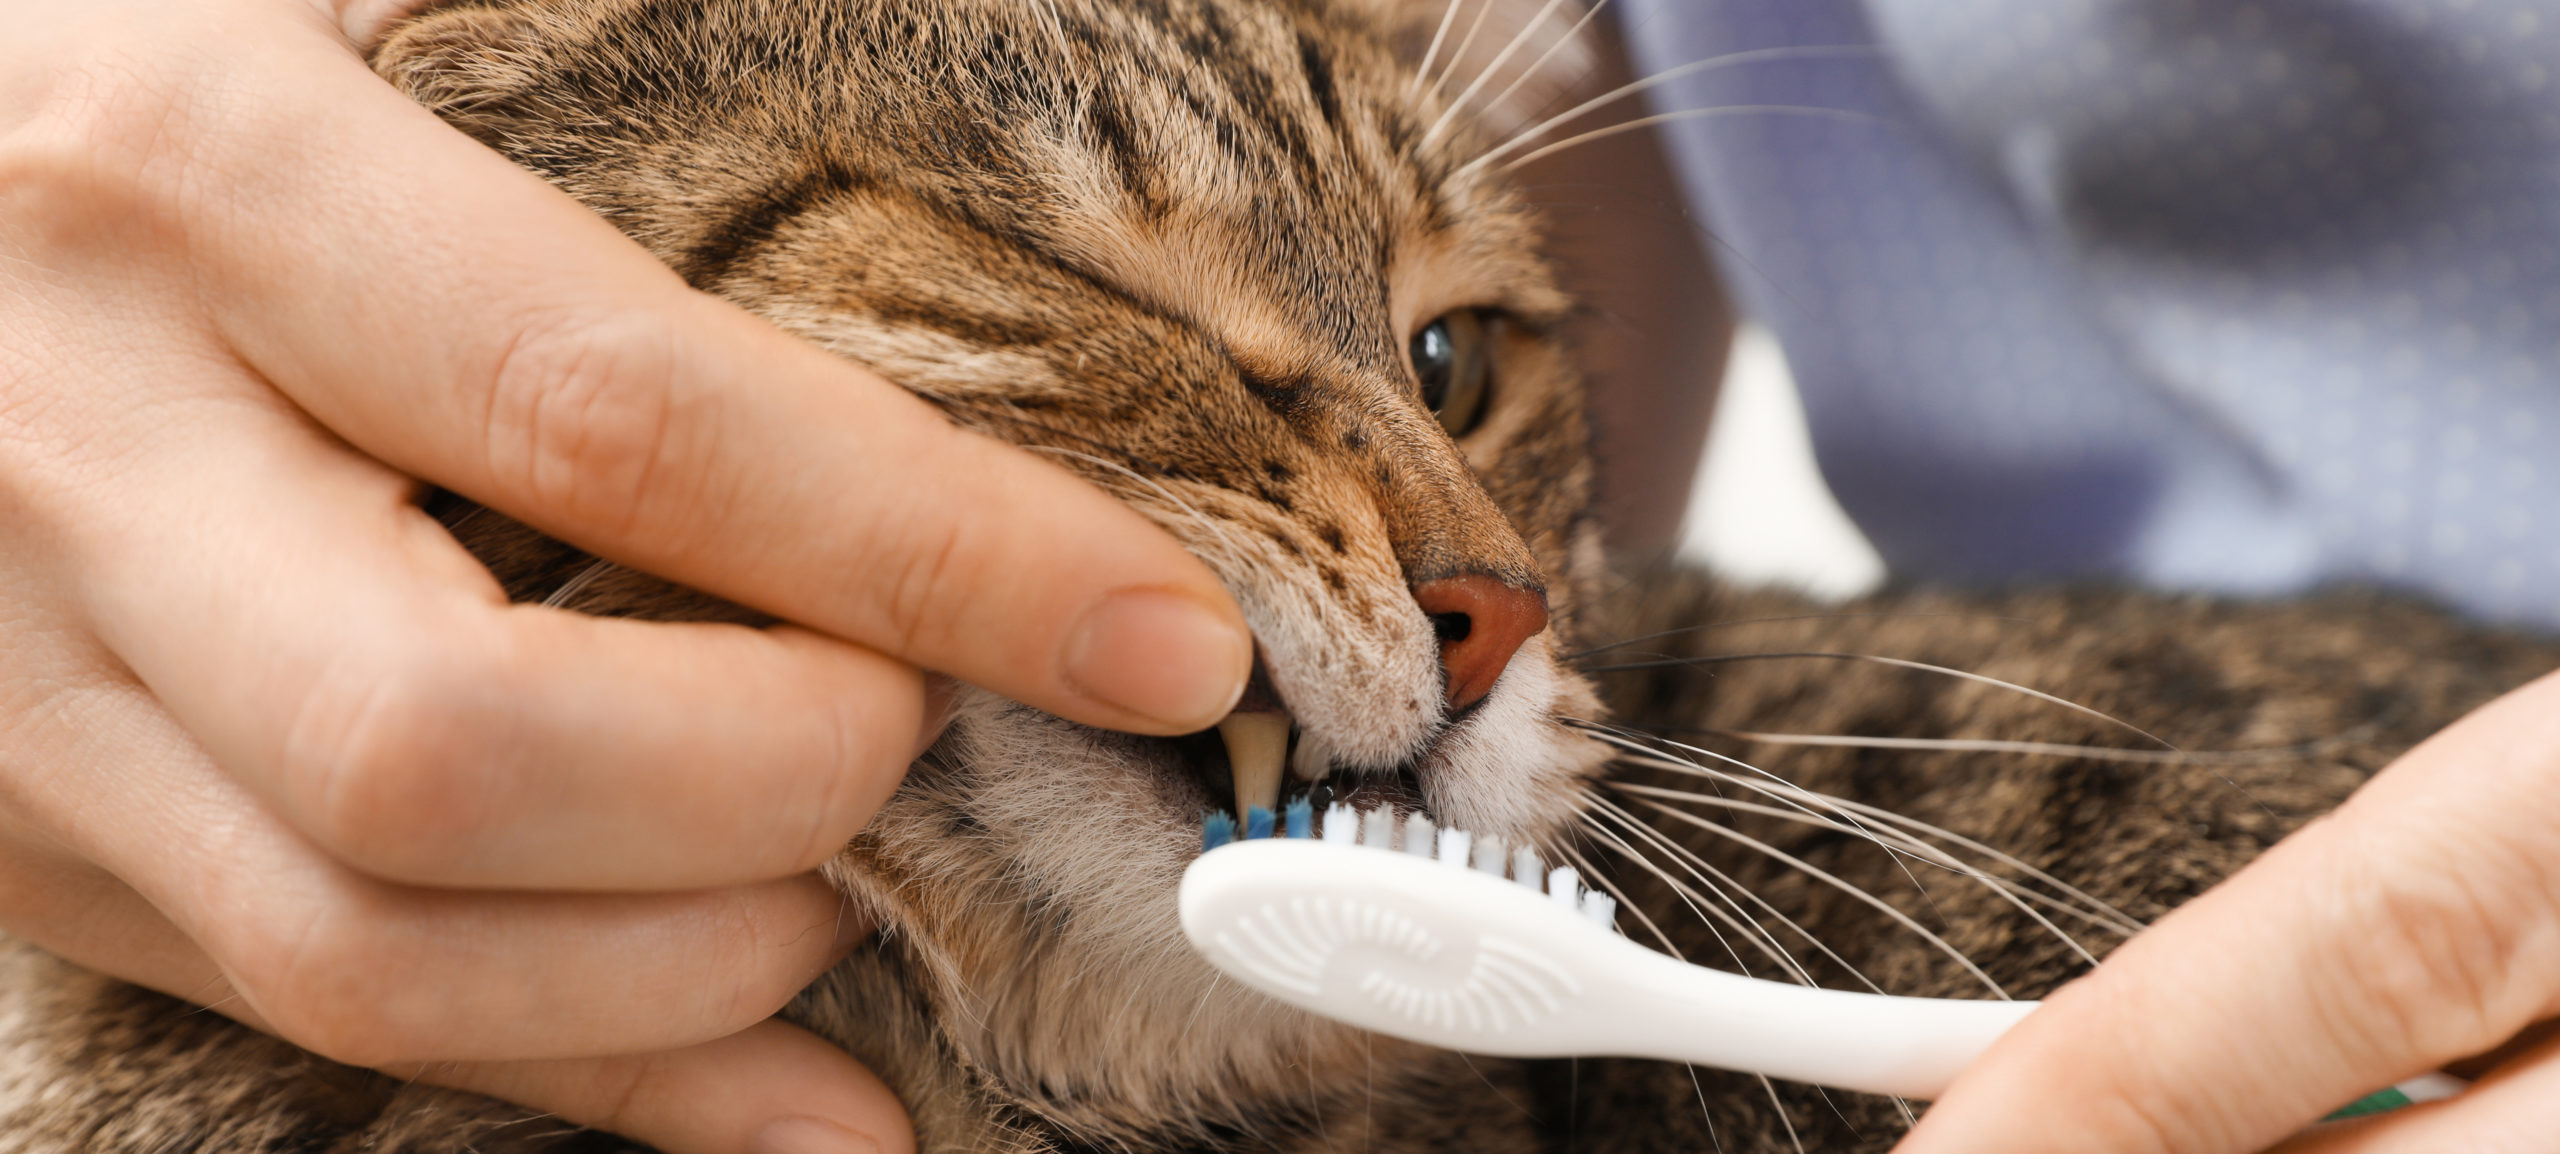 استوماتیت یا التهاب دهان گربه؛ التهاب شدید و دردناک تمام بخش های غشاء مخاطی و بافت های درون دهان است که بیش 10% از جمعیت کل گربه ها را درگیر میکند. استوماتیت گربه شبیه به بیماری ژنژیویت است، منتها در ژنژیویت صرفاً التهاب لثه ولی در استوماتیت بسیاری از بافت های دهانی از جمله زبان، کف و سقف دهان و لب ها درگیرند.